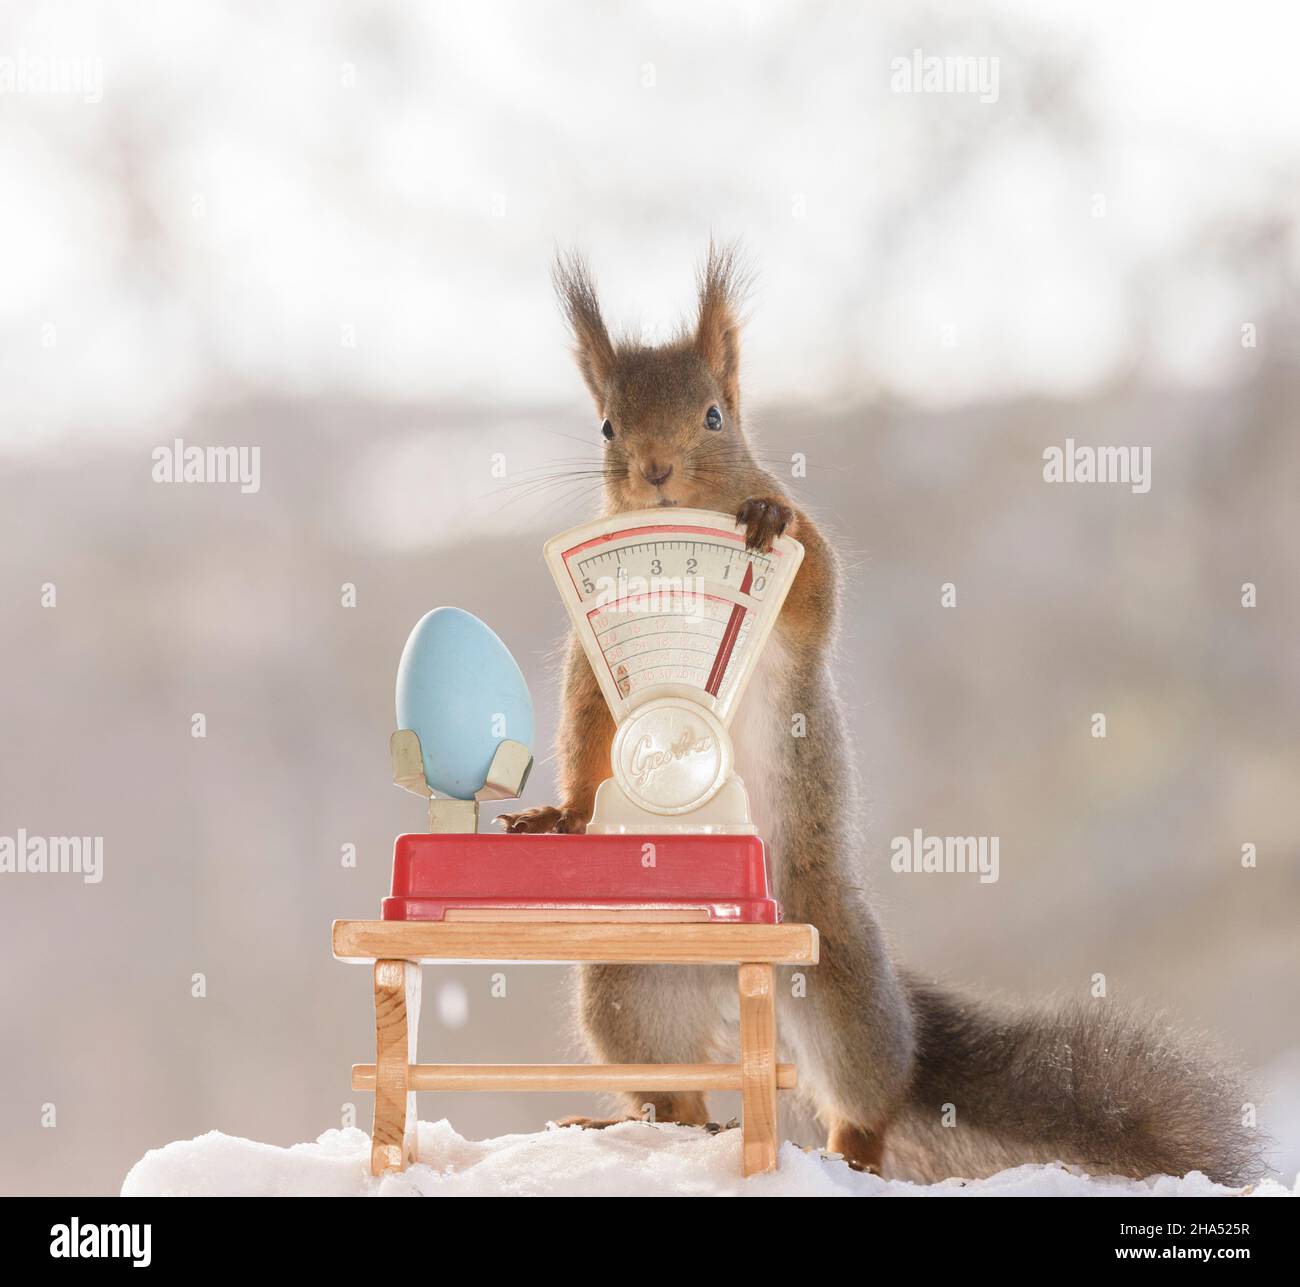 Rotes Eichhörnchen hält ein blaues Ei auf einer Waage Stockfoto